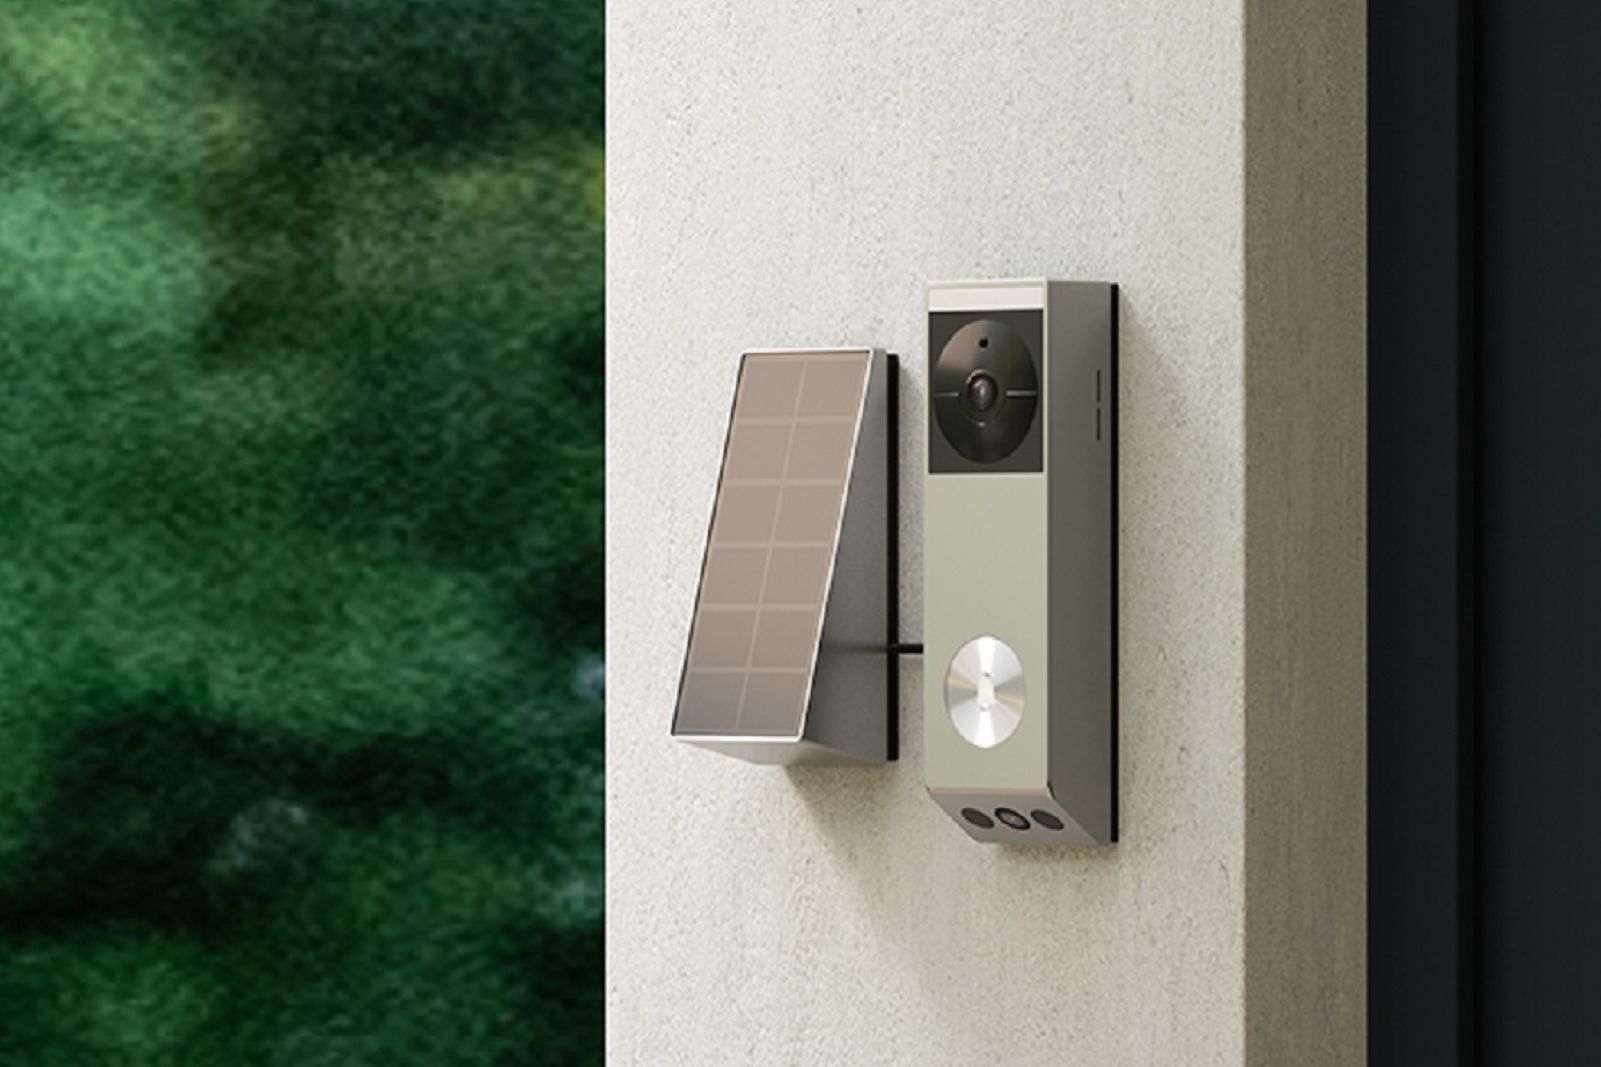 EZVIZ EP3x Pro Dual Lens Video Doorbell Mounted on Outside Wall